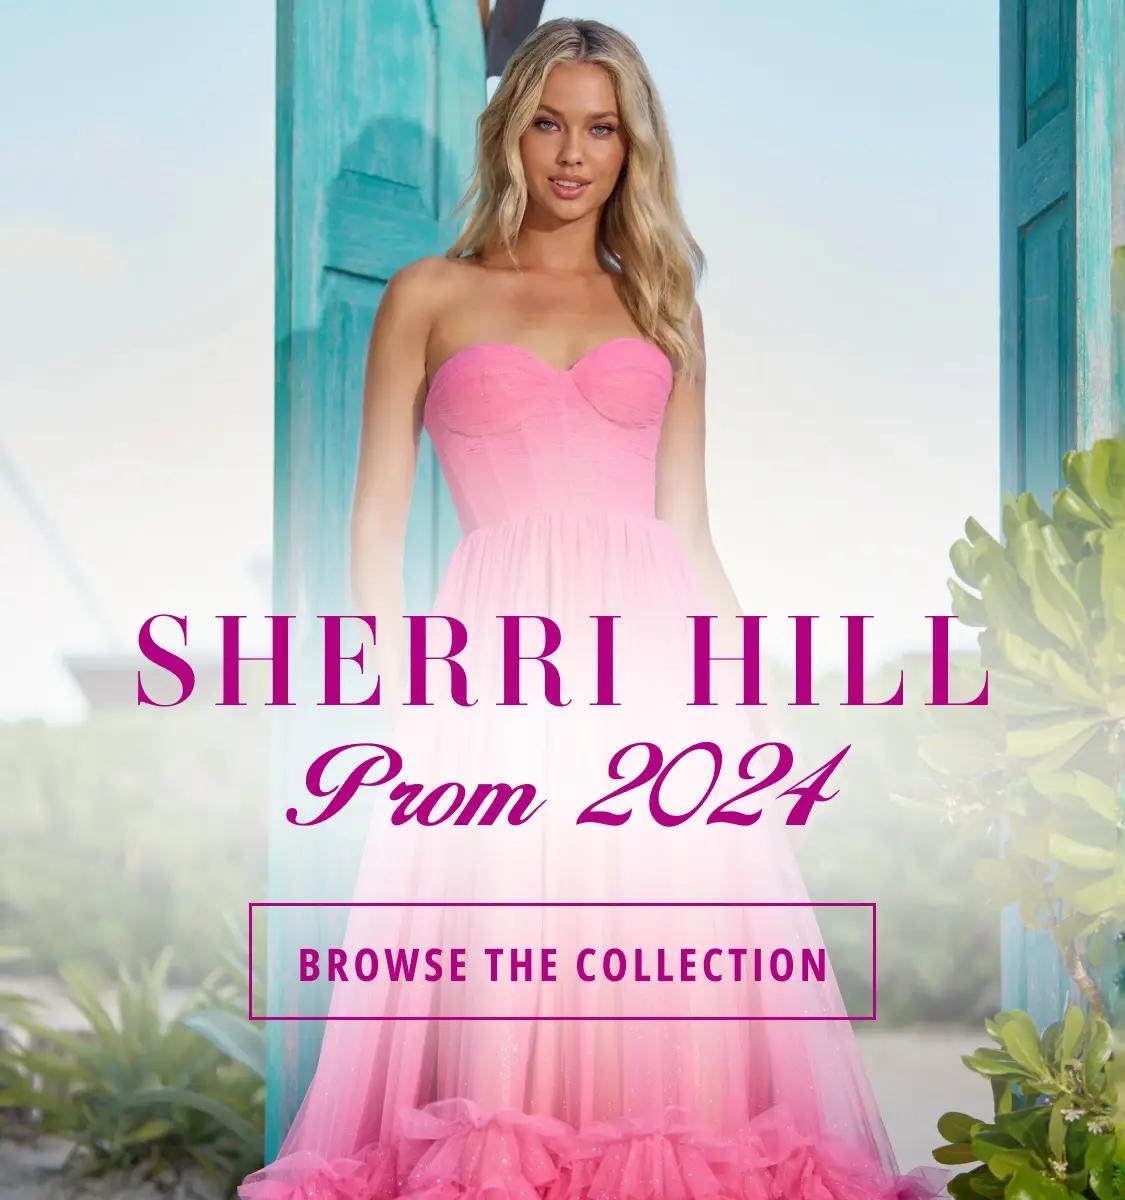 Sherri Hill Prom 2024 banner 2 mobile